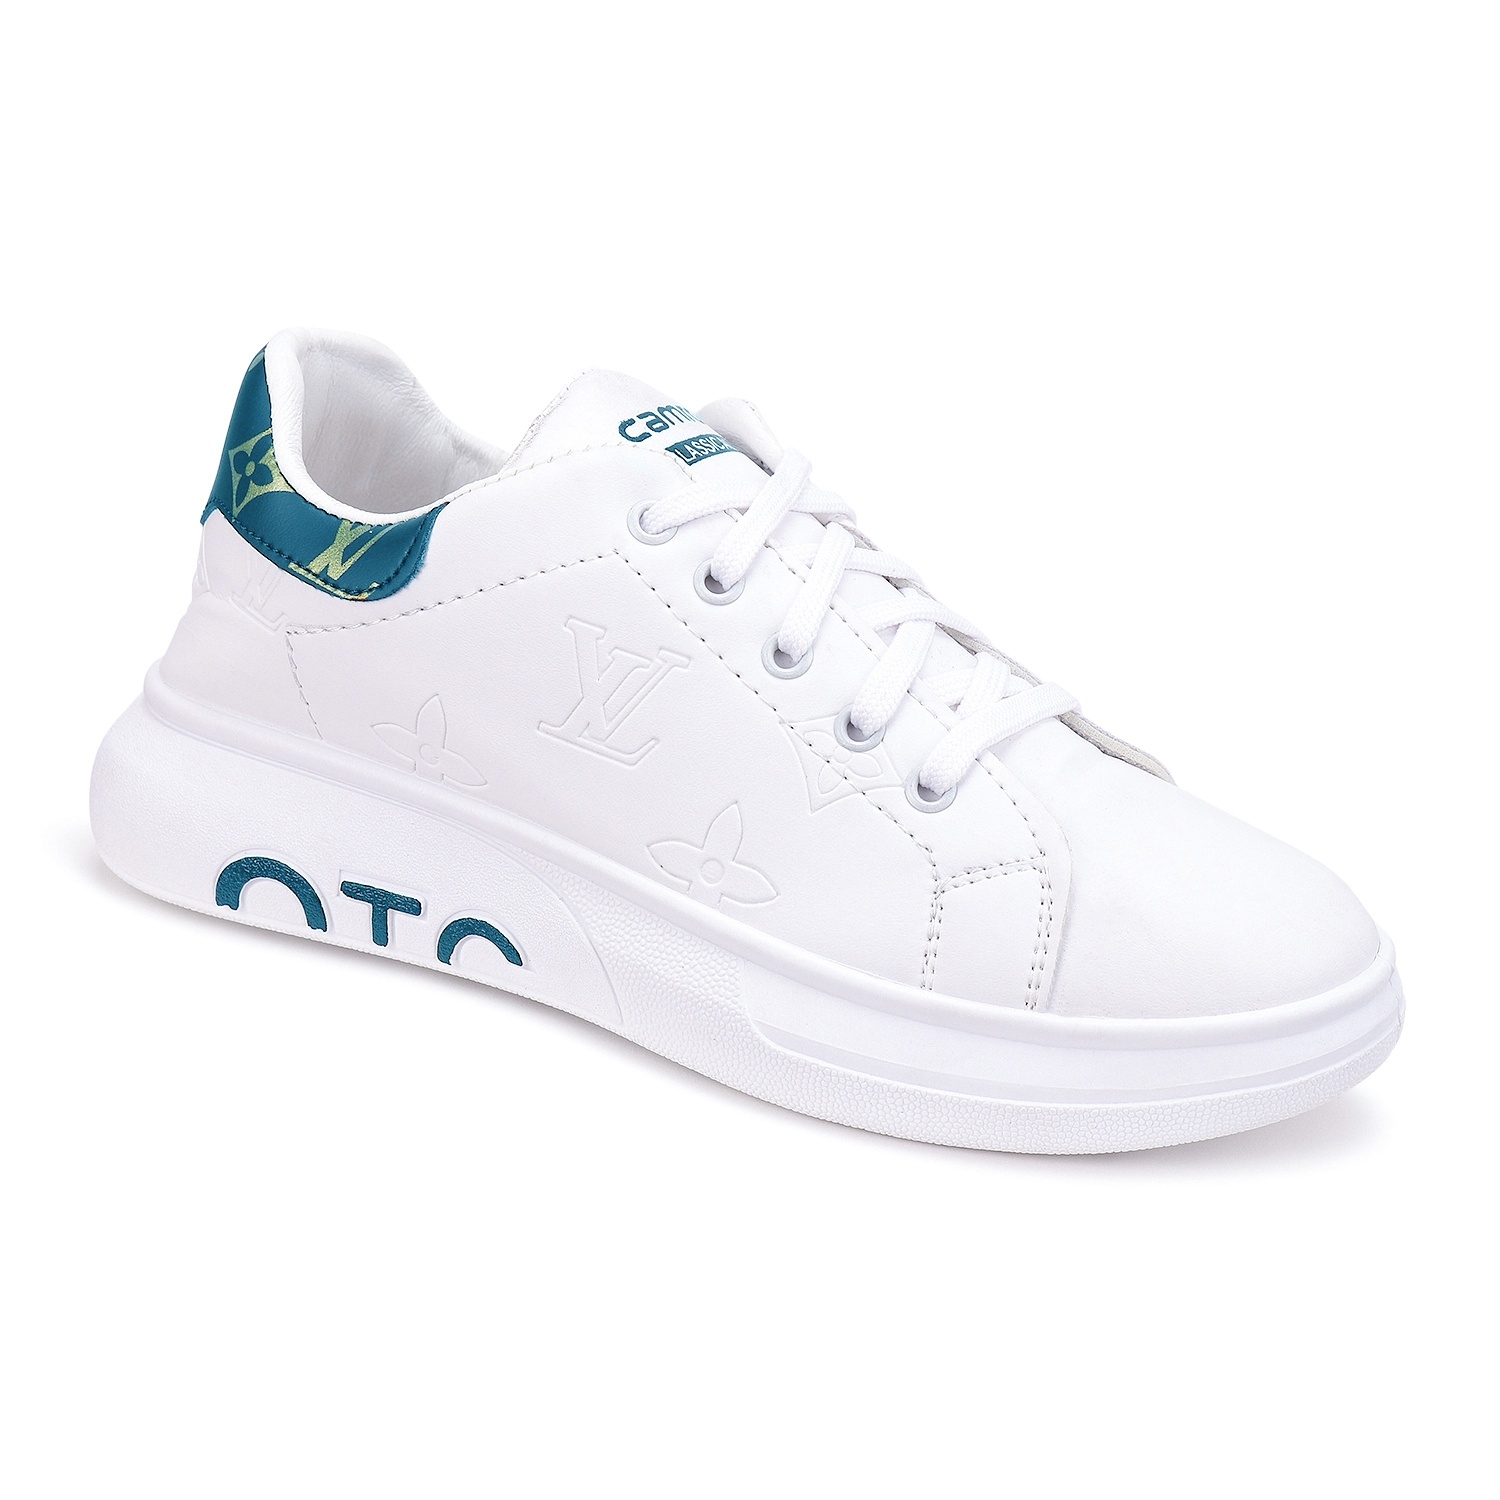 Camro OTC 2 White/T.Blue Men Running Shoe